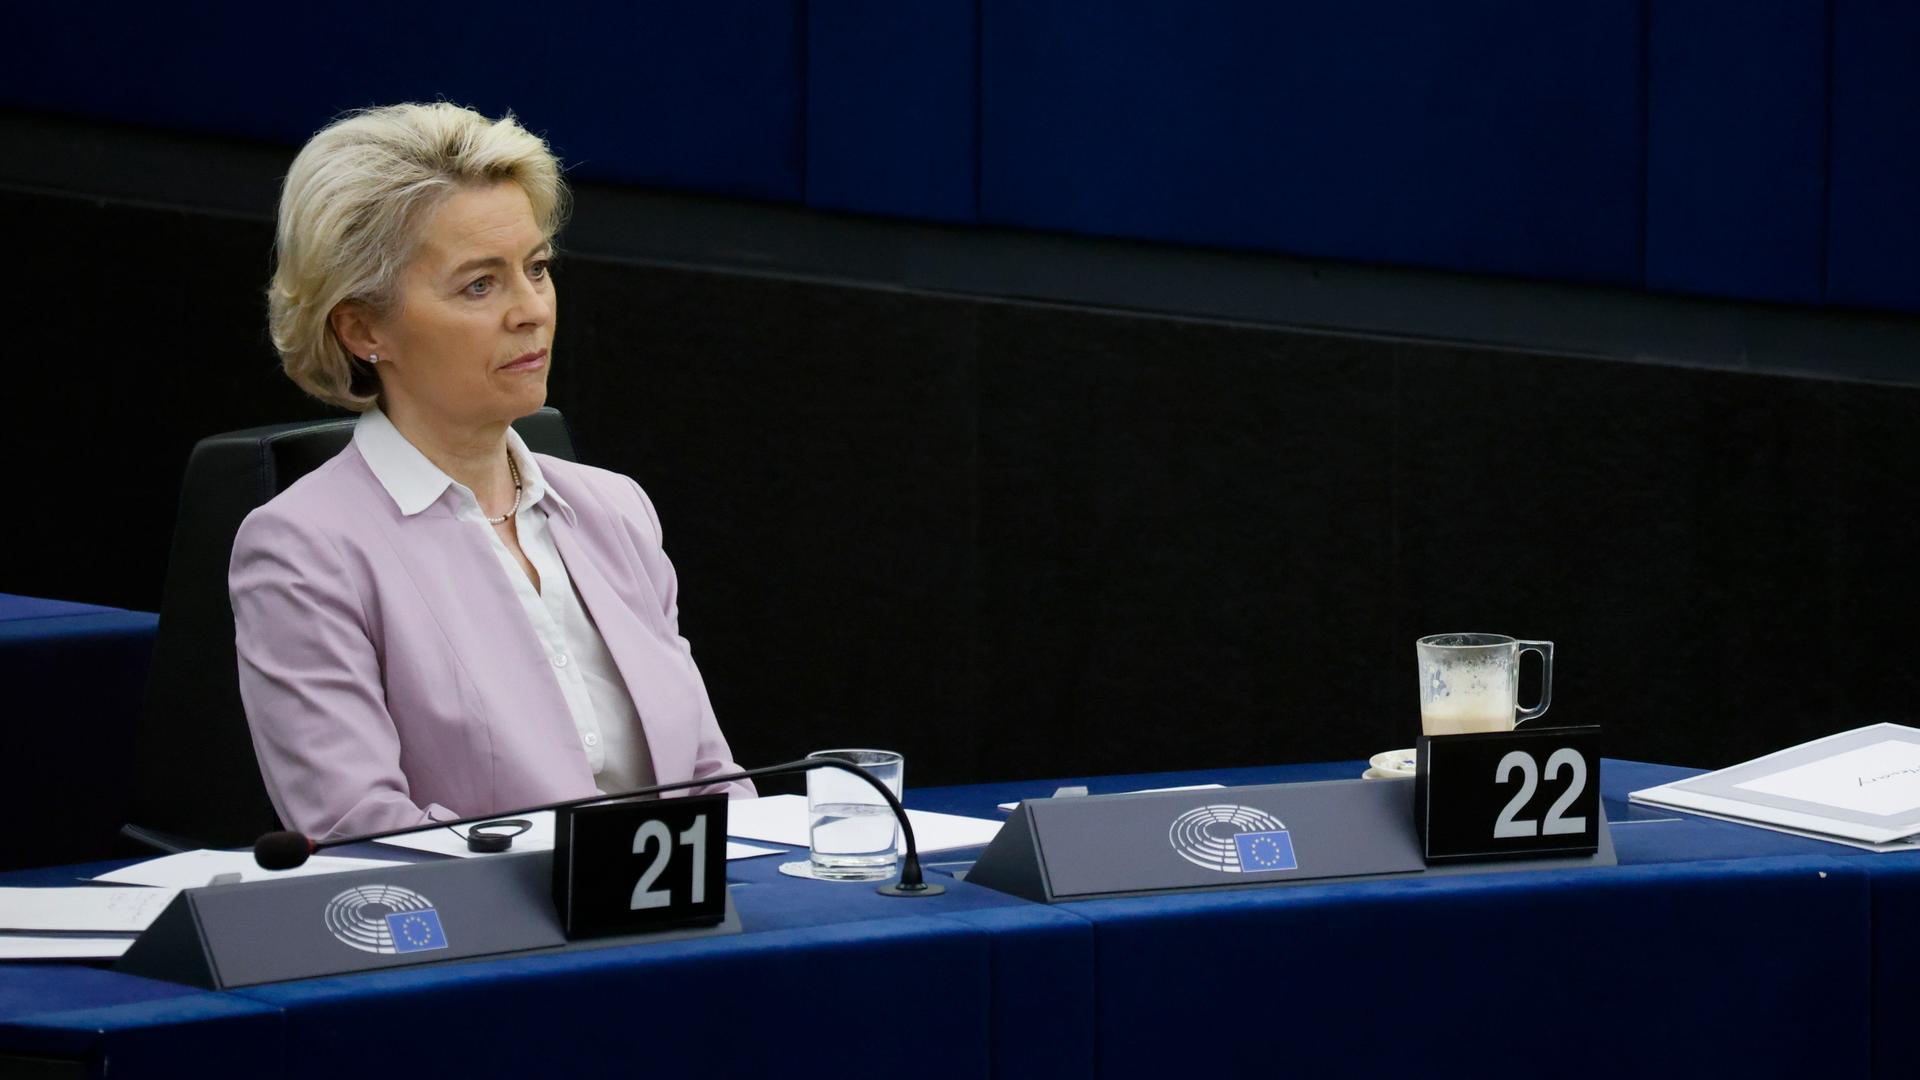 Kommissionspräsidentin Ursula von der Leyen verfolgt eine Sitzung im Europäischen Parlament in Straßburg. Sie sitzt an ihrem Platz und schaut enttäuscht.